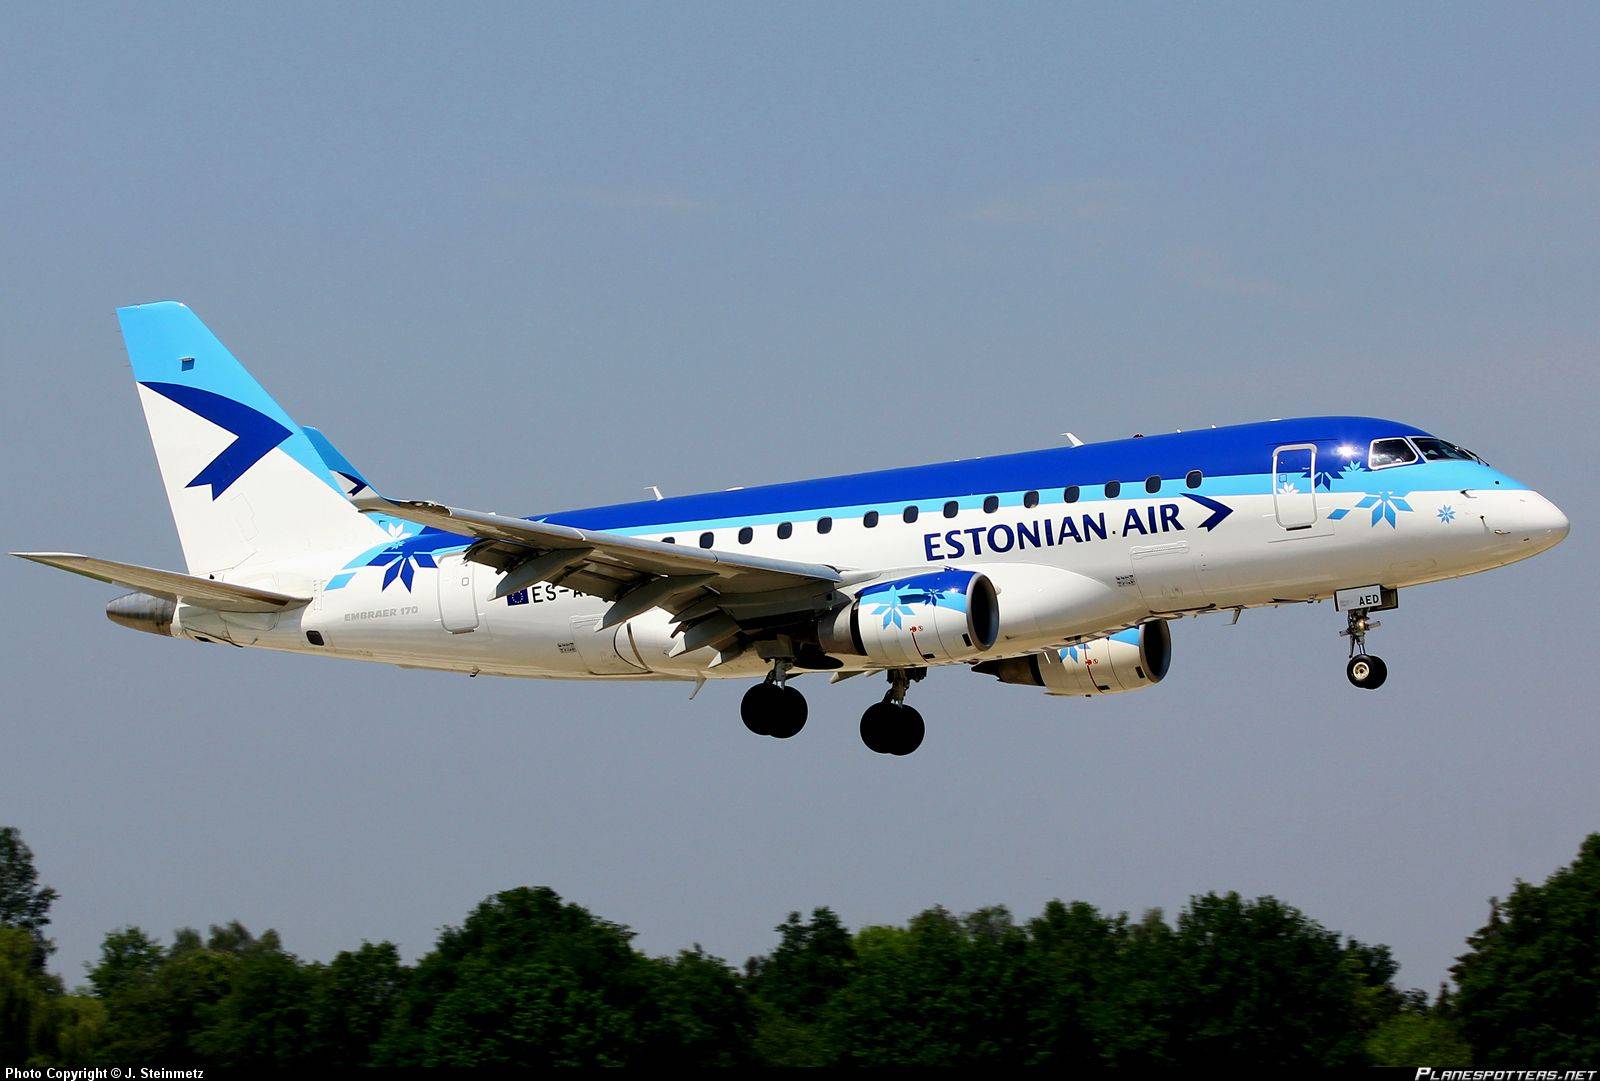 Estonian air. изменения обслуживания на борту и условий регистрации на рейс эстонских авиалиний. | air-agent.ru